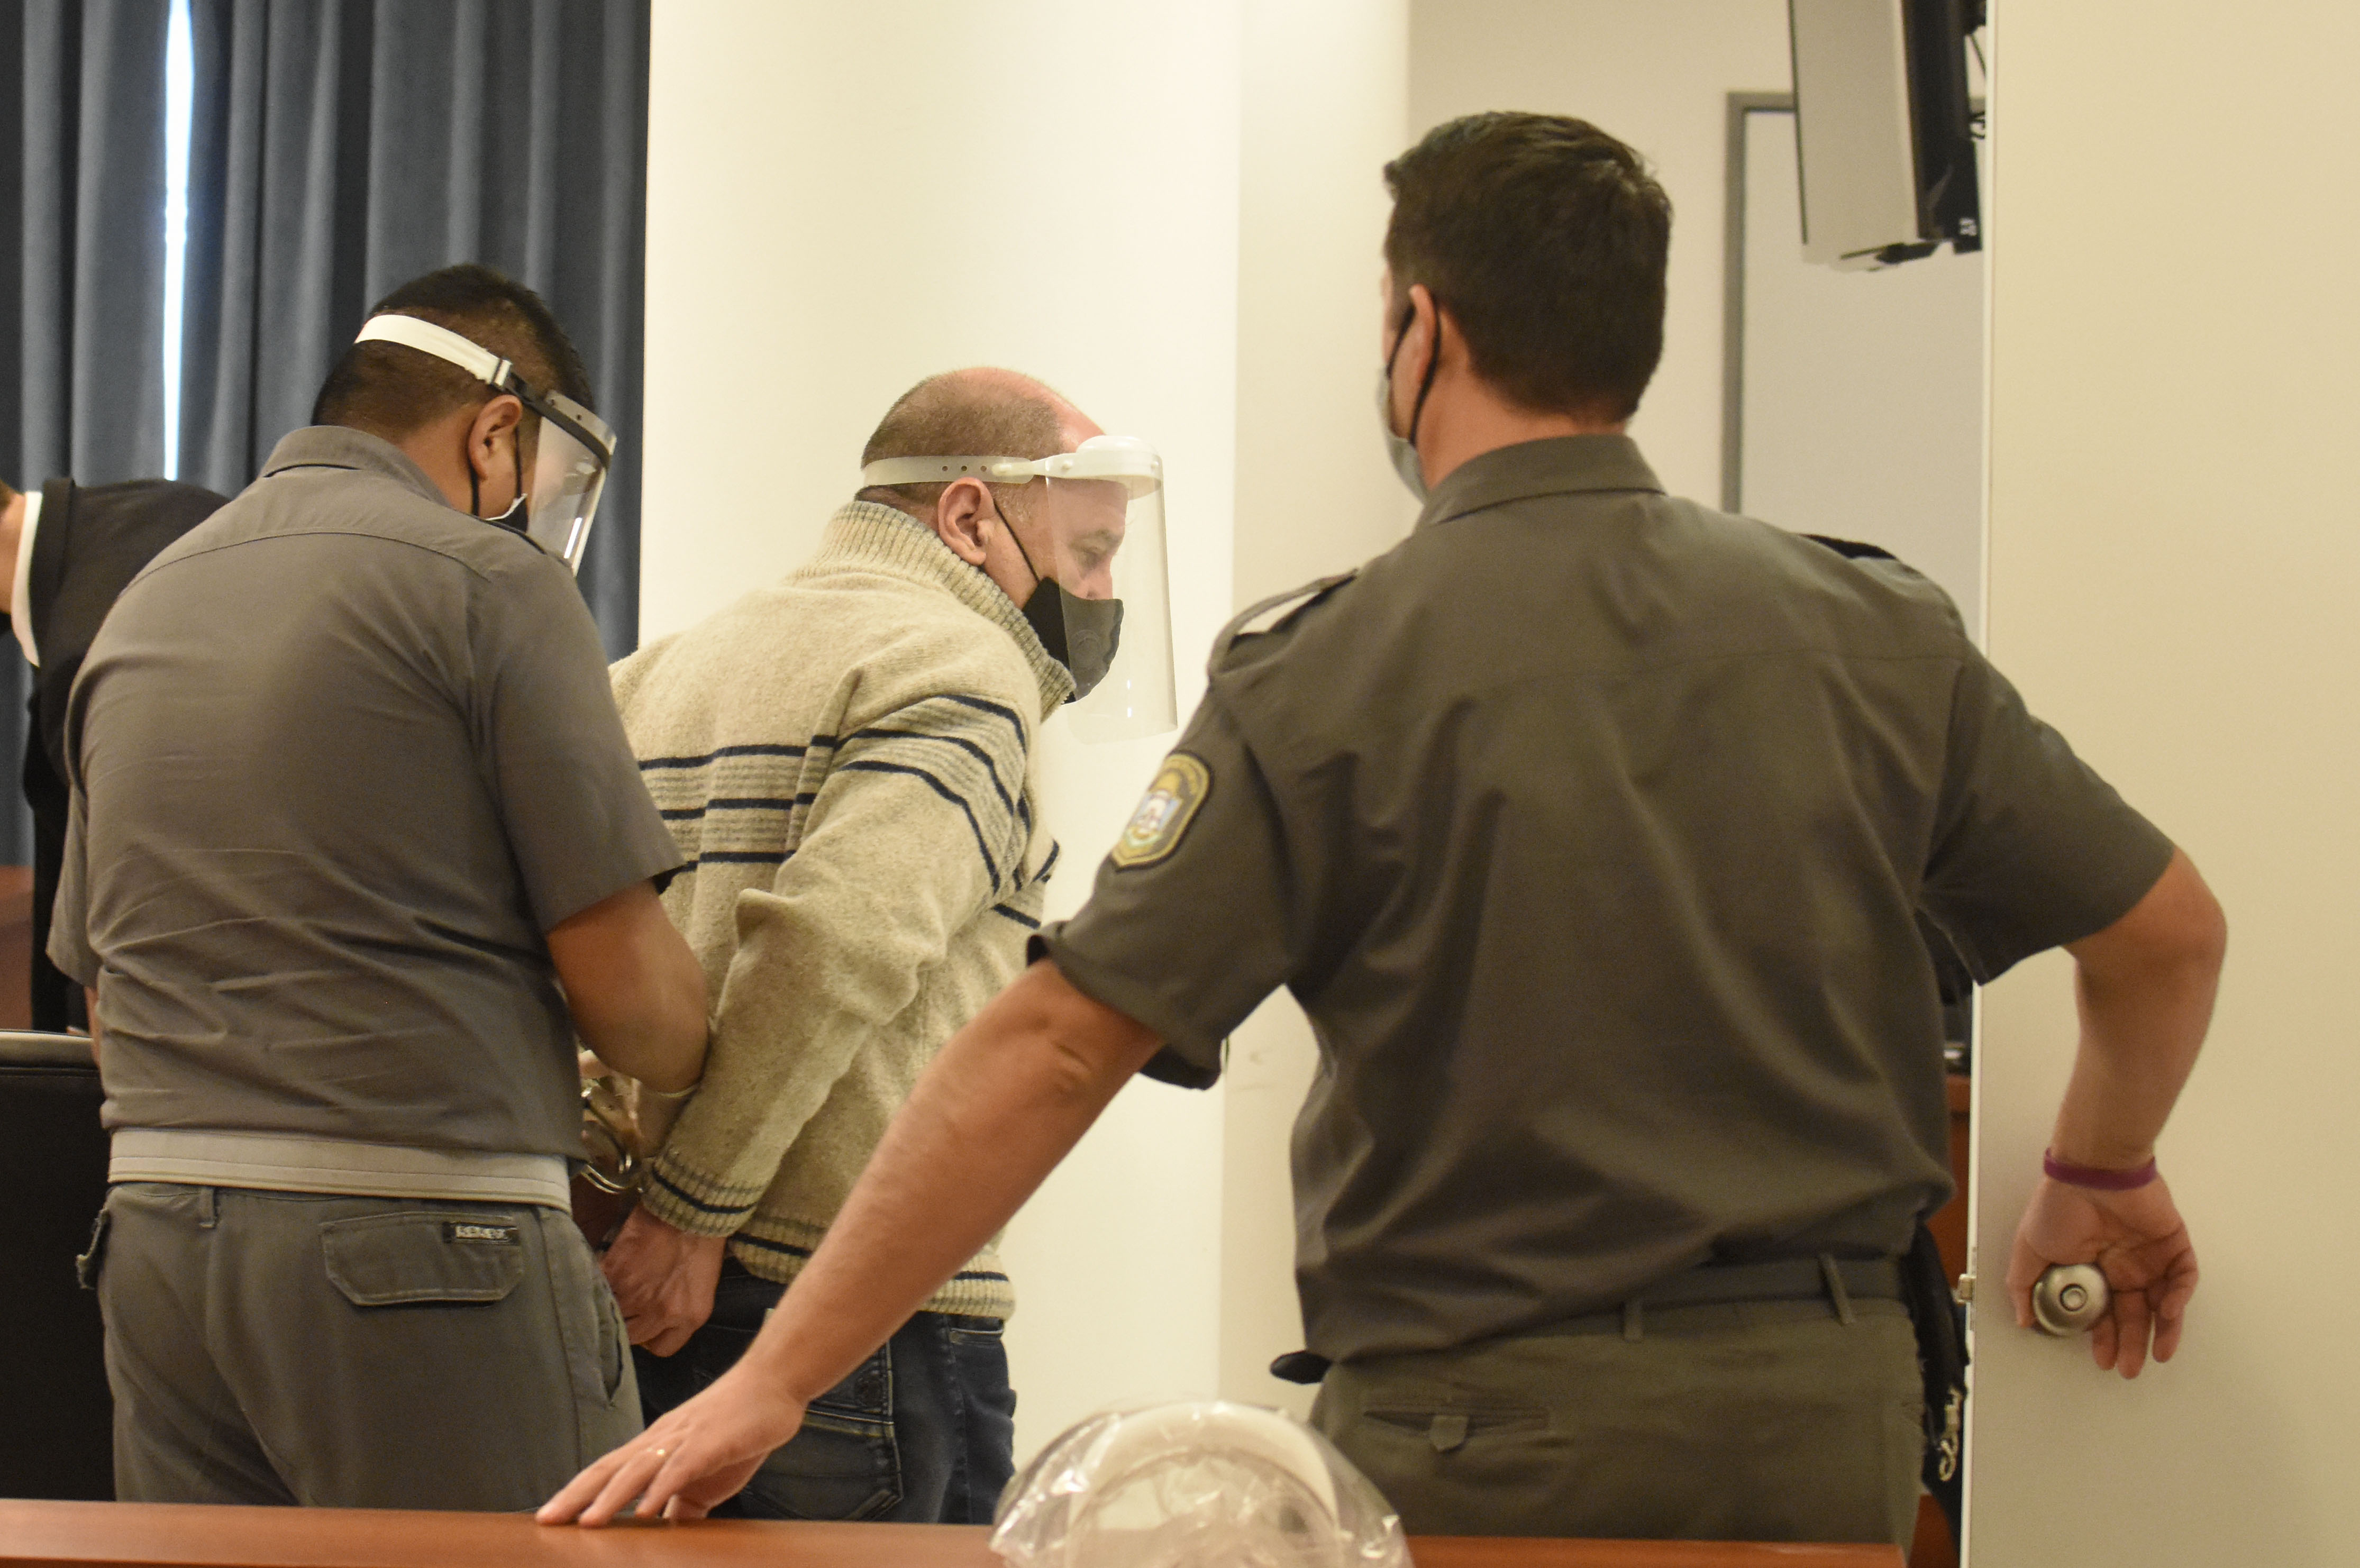 El acusado reconoció el hecho ante el jurado y pidió disculpas a la familia de la víctima. Foto Florencia Salto.